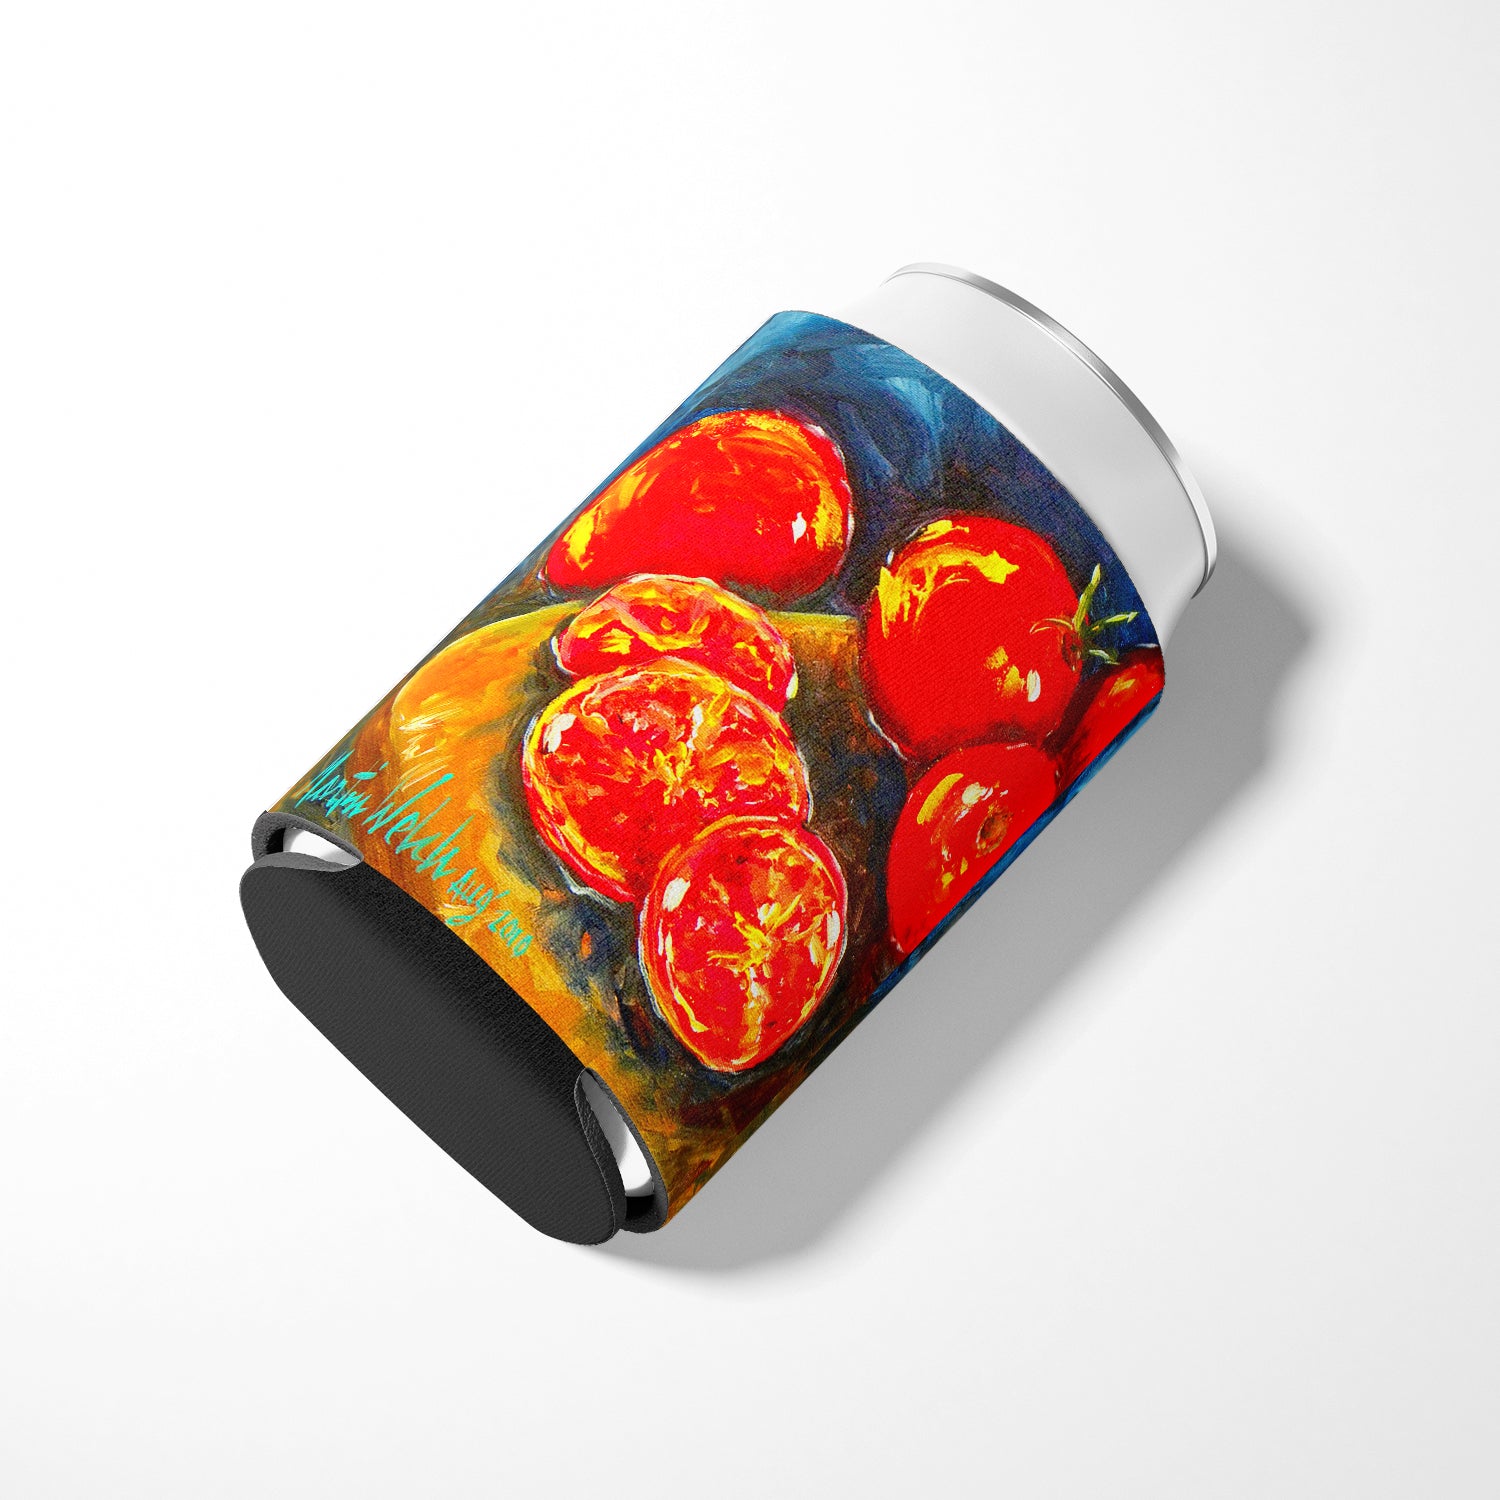 Vegetables - Tomato Slice It Up Can or Bottle Beverage Insulator Hugger.